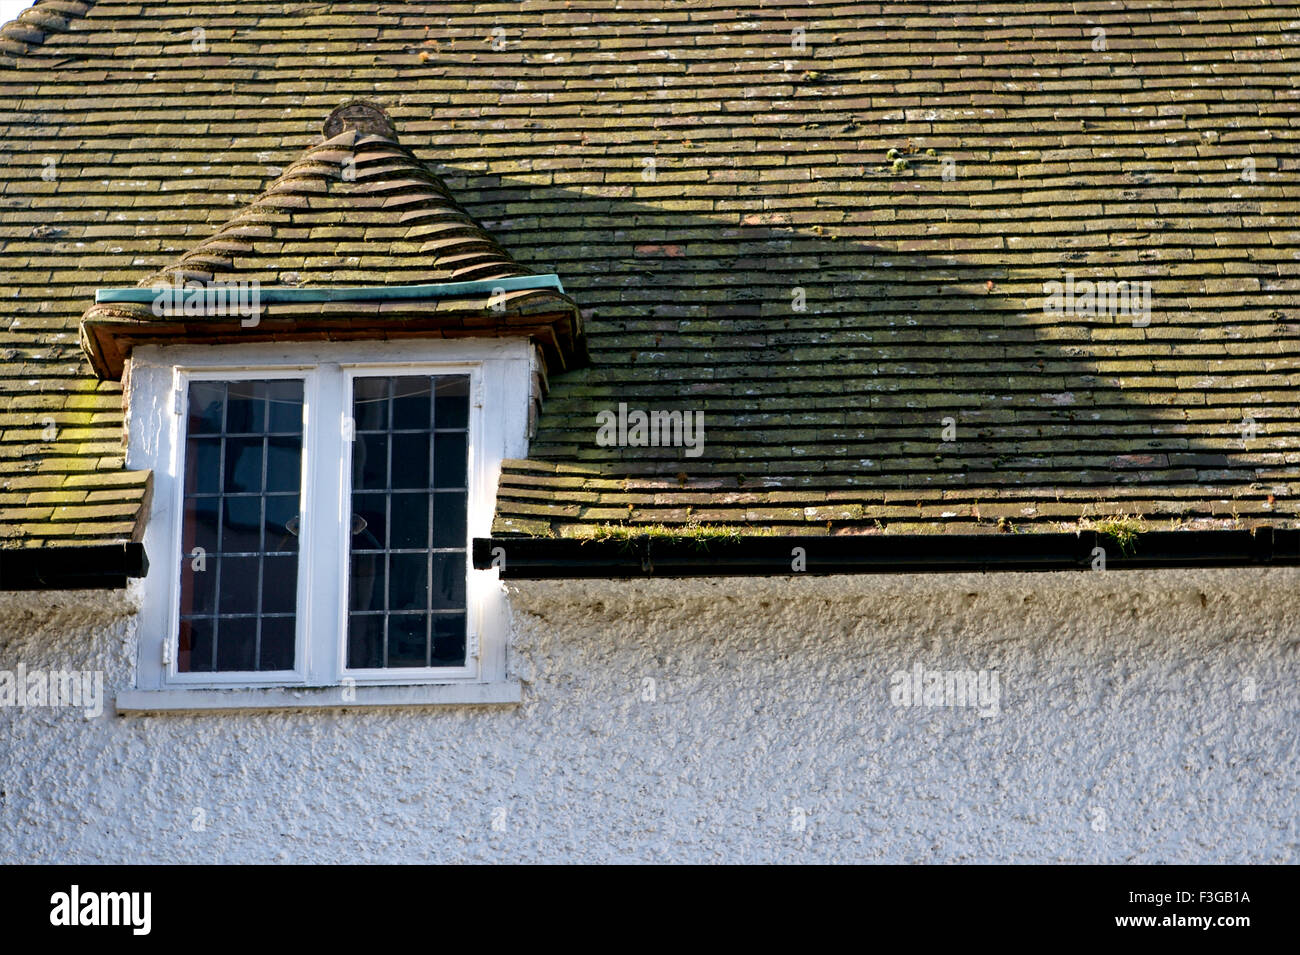 Dachziegel-Gebäude; London; England; Vereinigtes Königreich; Vereinigtes Königreich Stockfoto